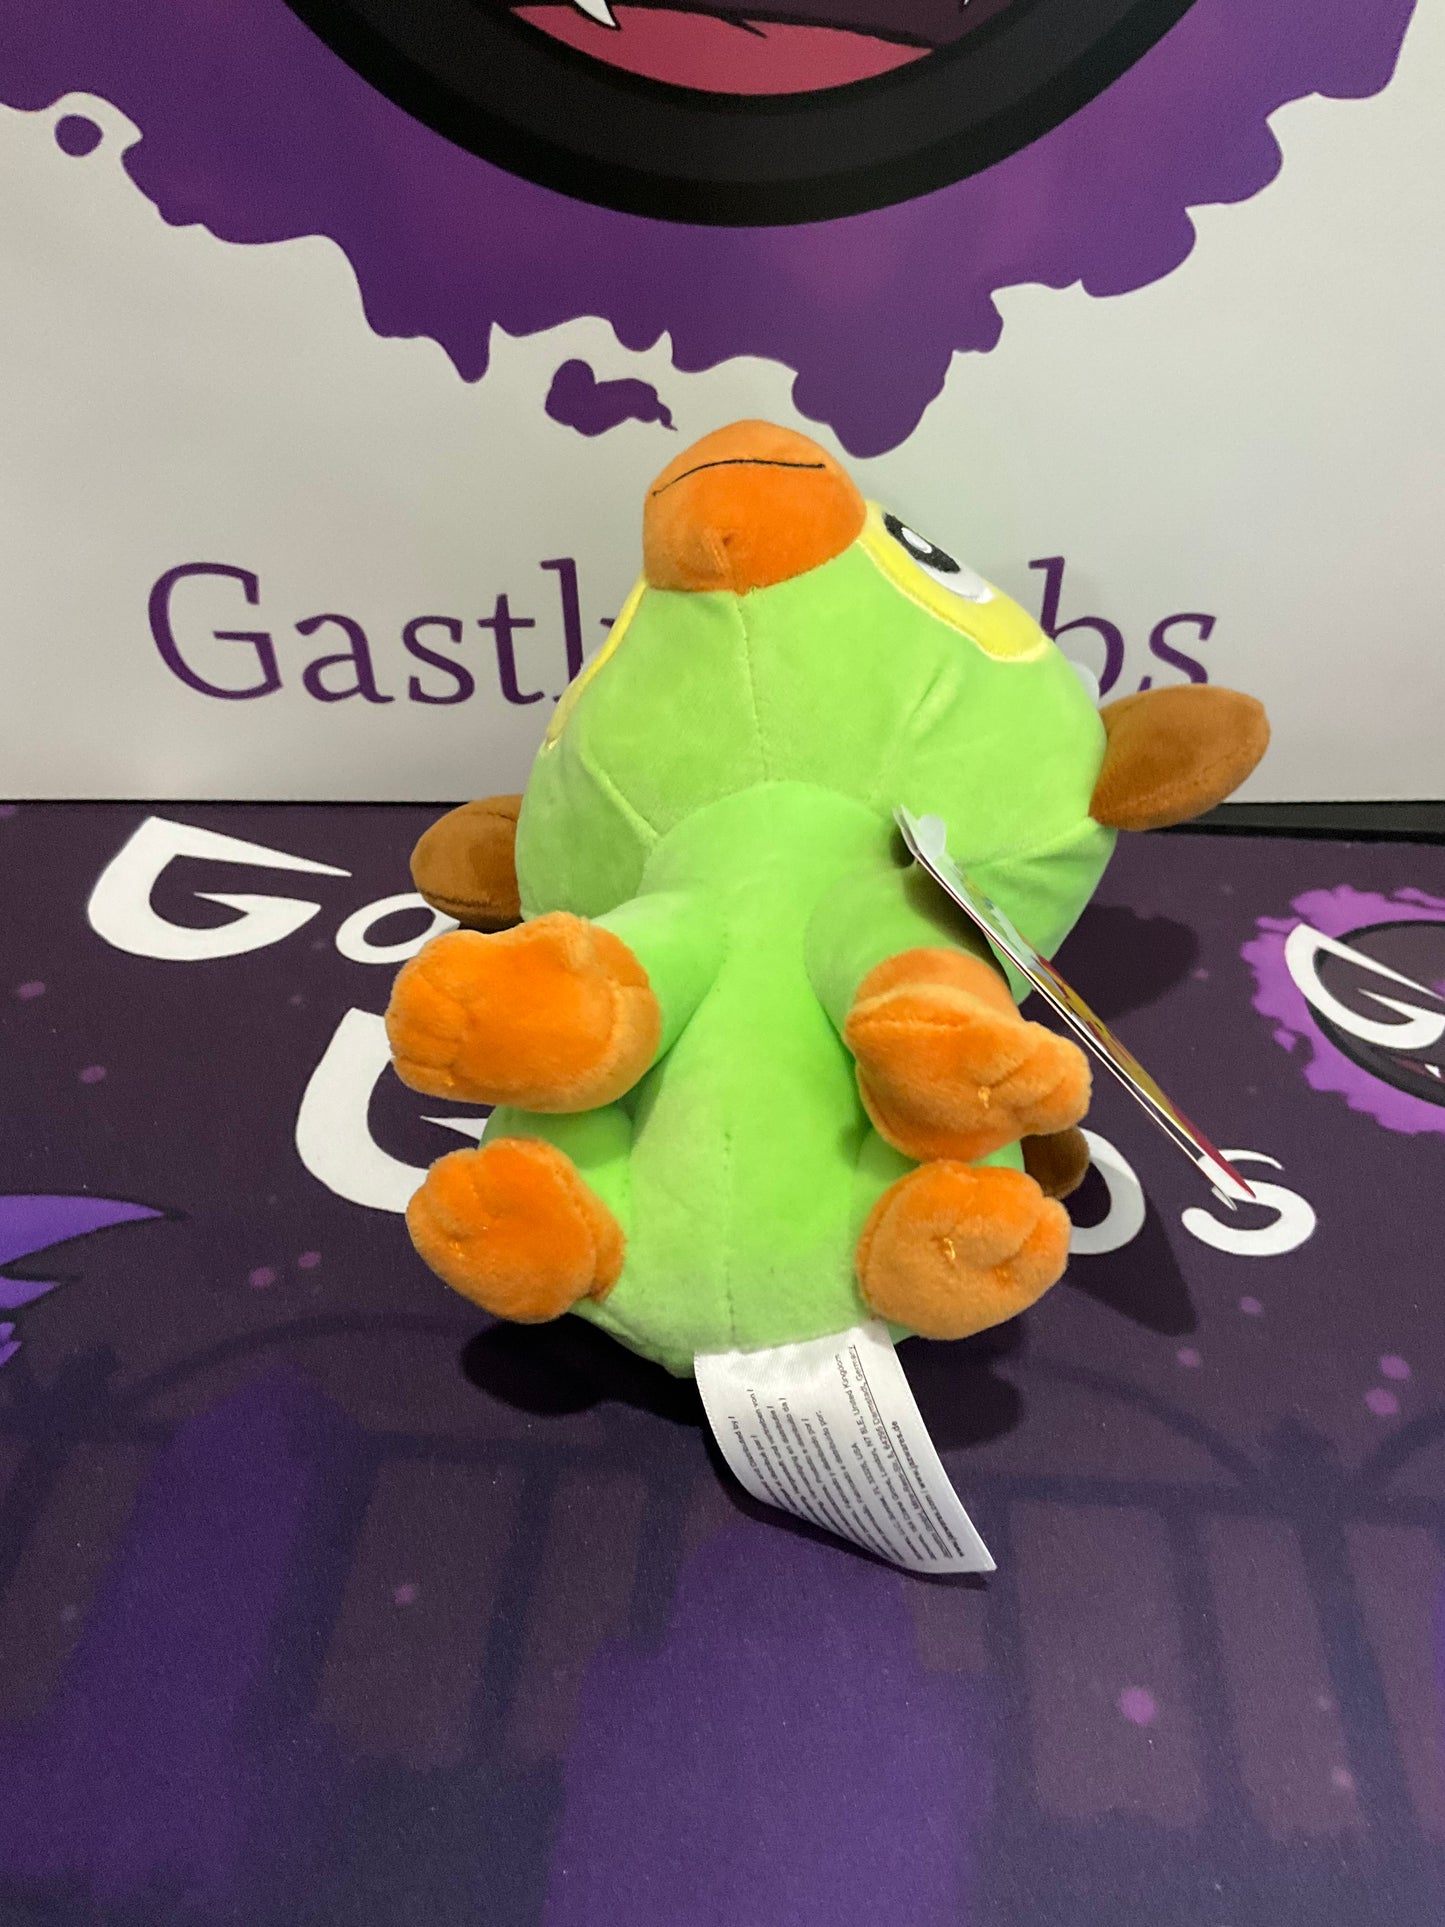 Pokémon Grookey 8-inch Plush Toy